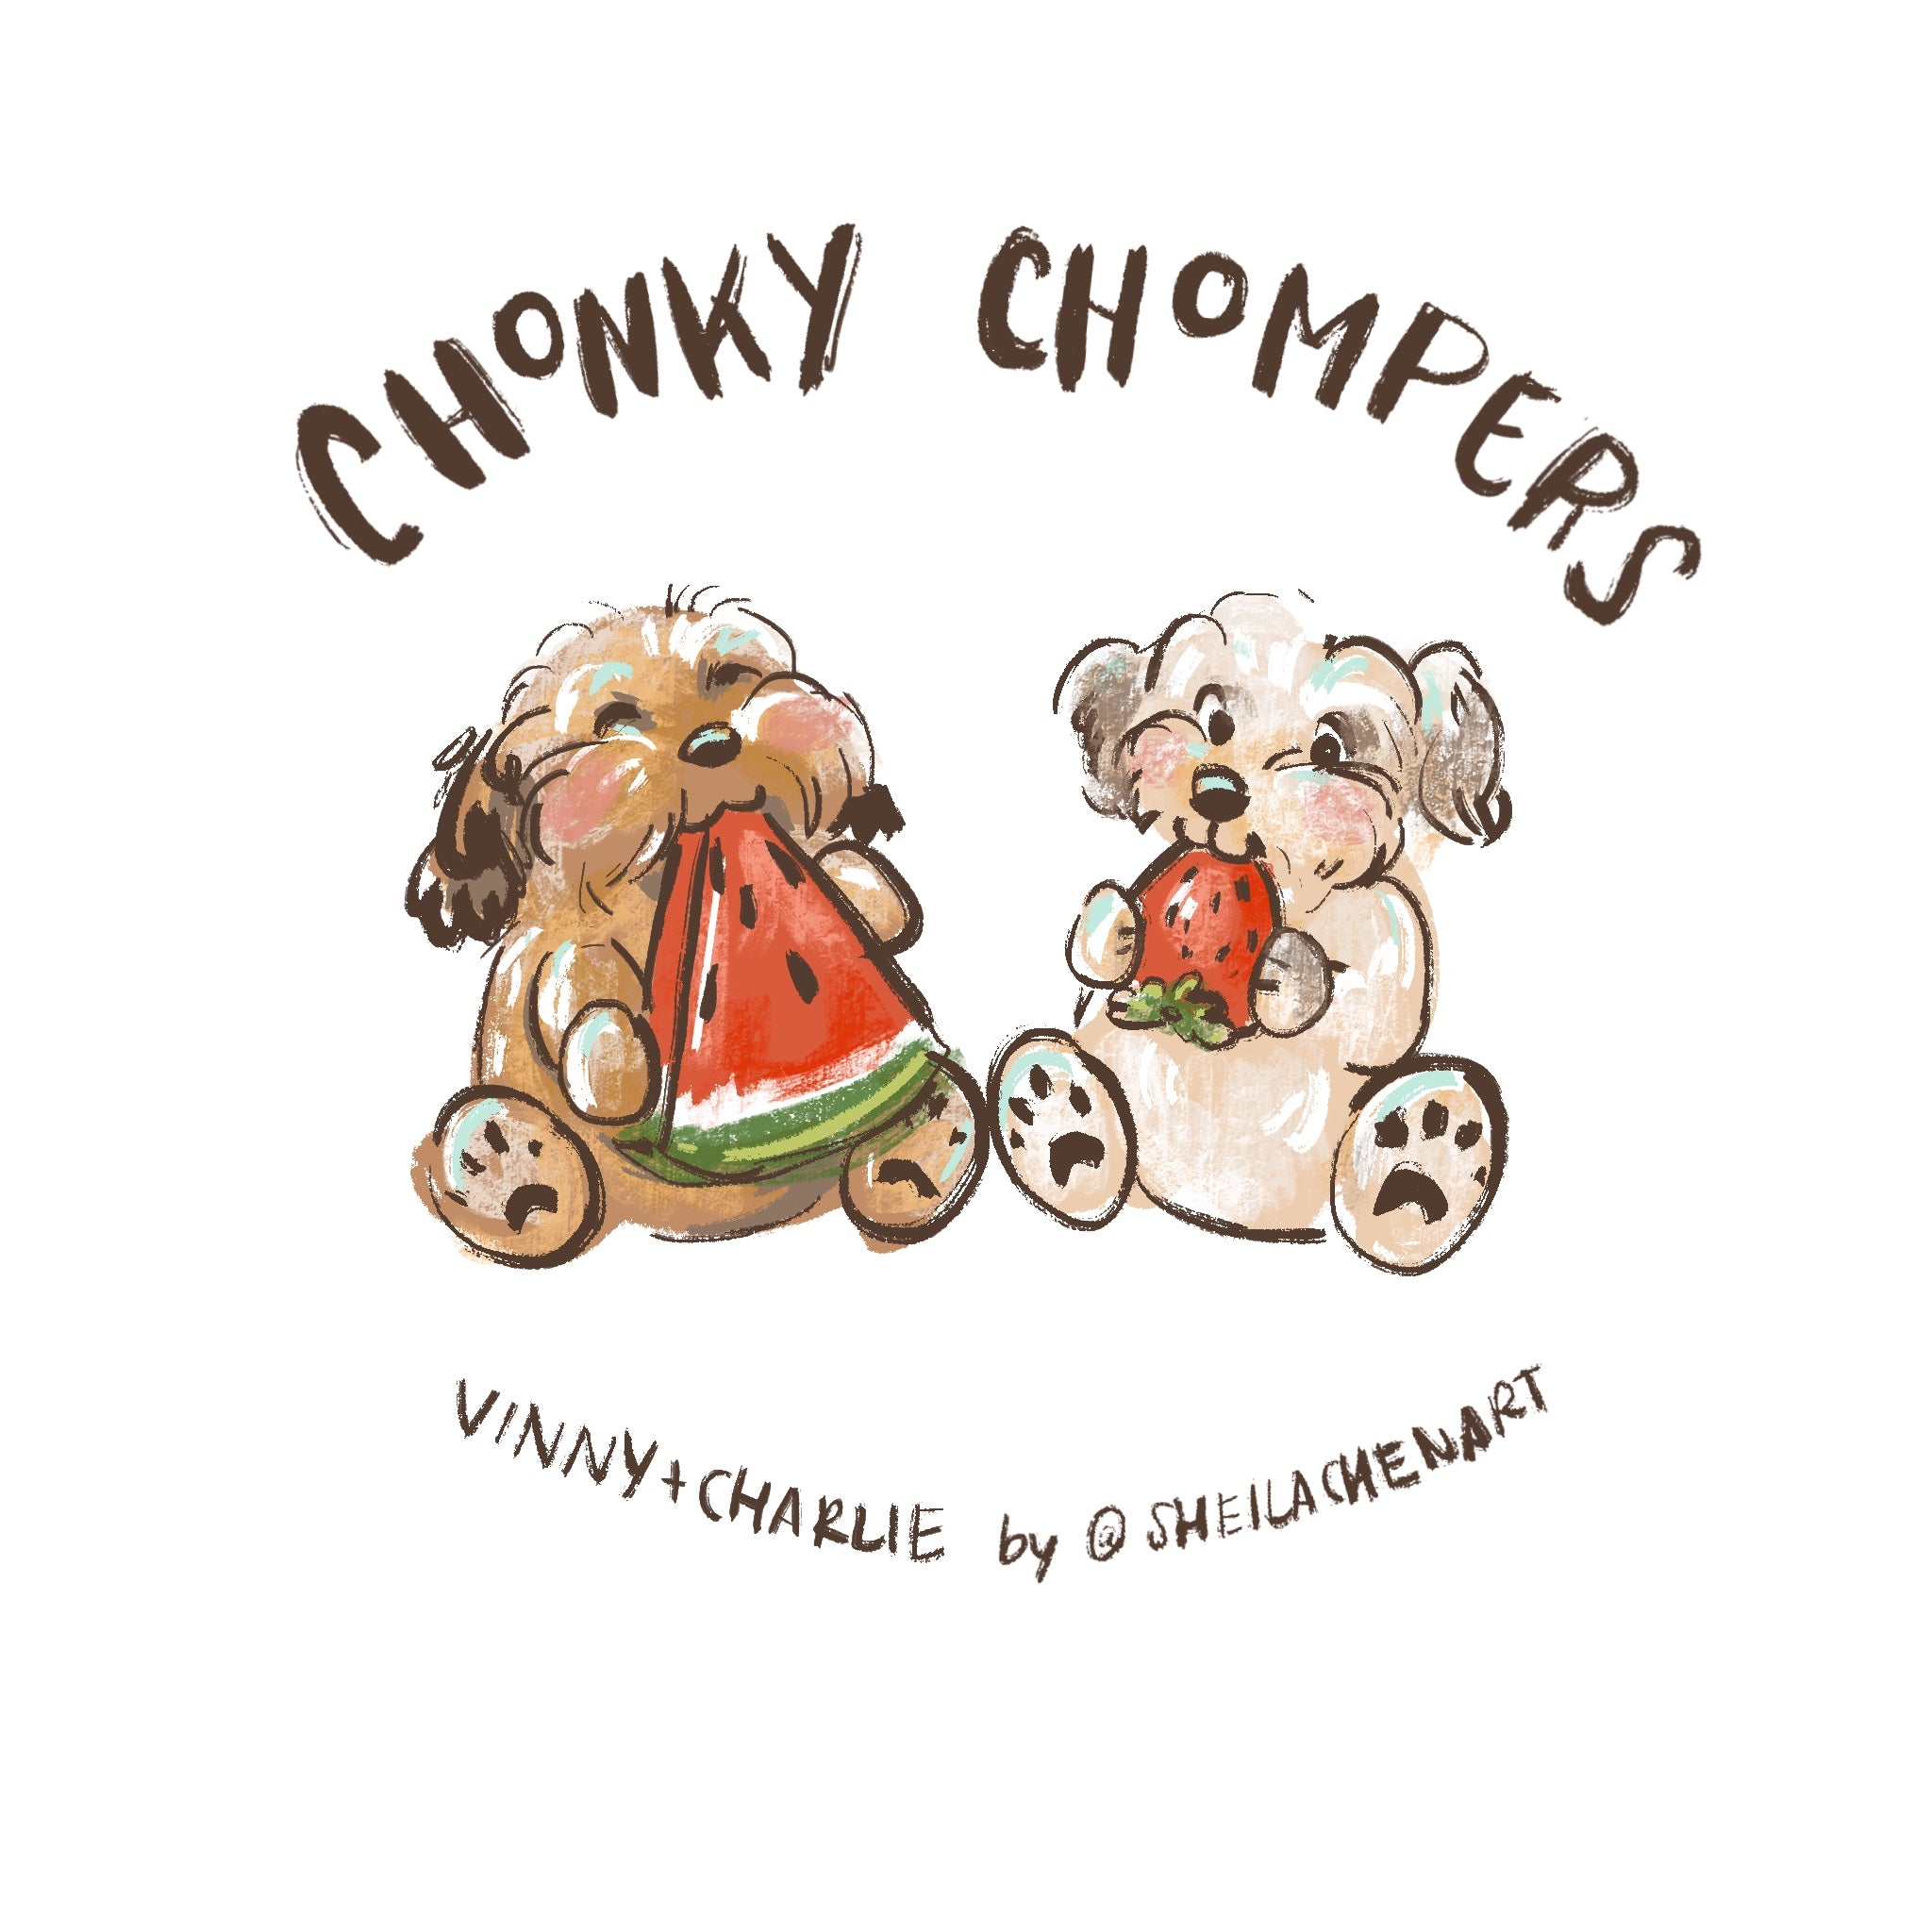 Chonky Chompers Digital